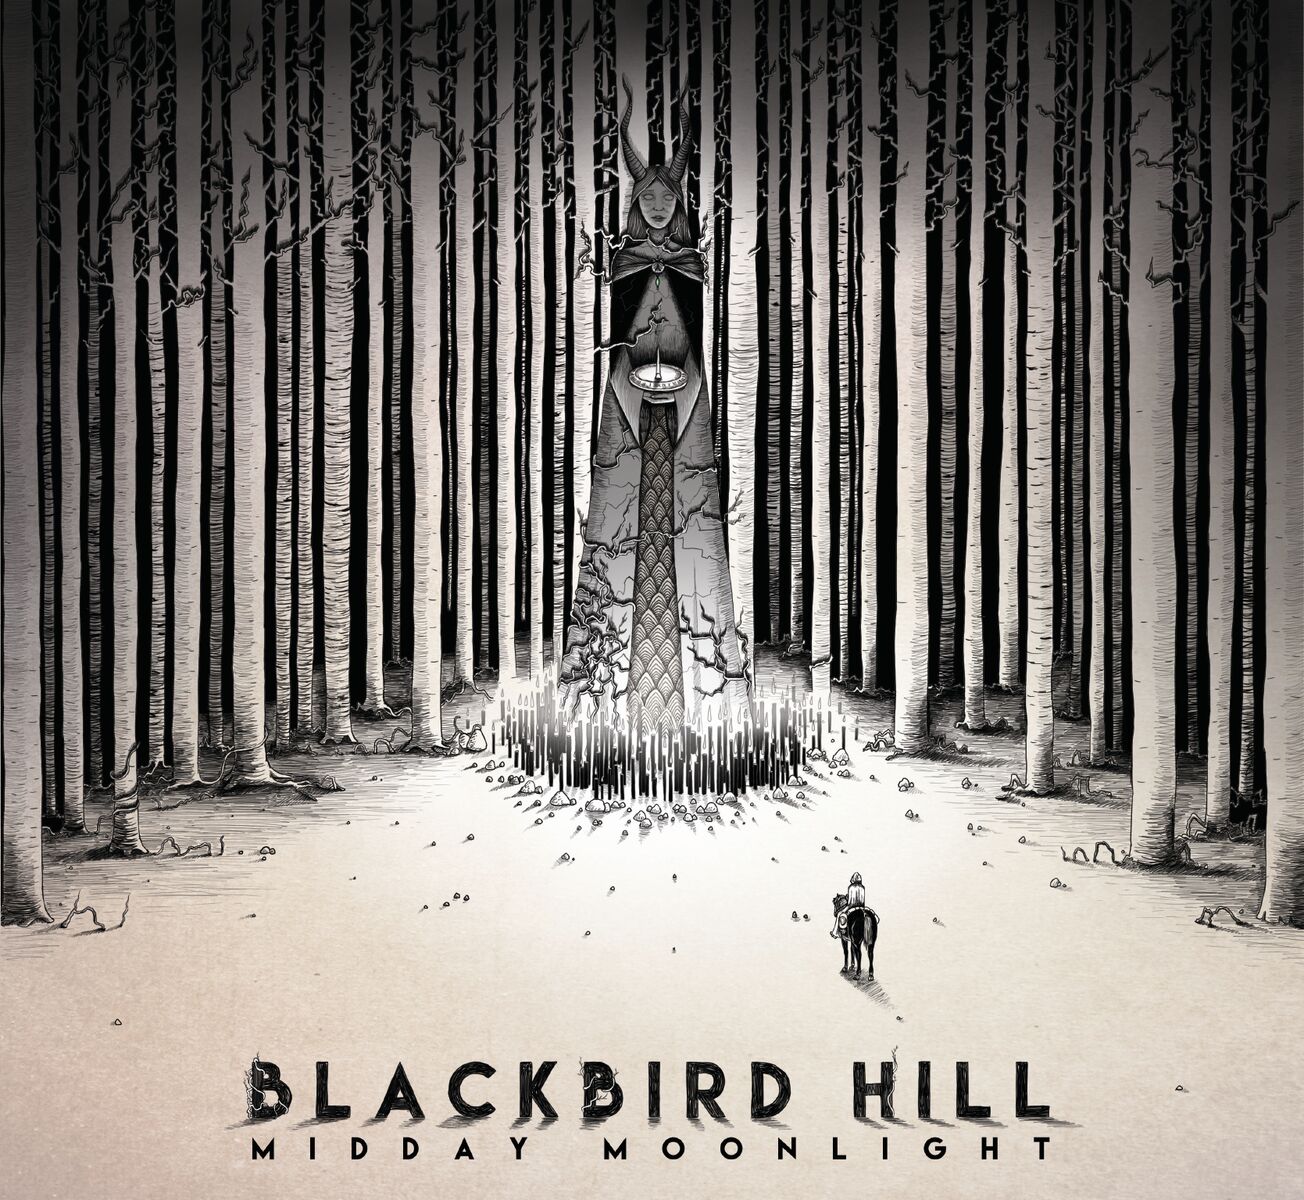 blues, stoner, Midday Moonlight, EP, blackbird hill